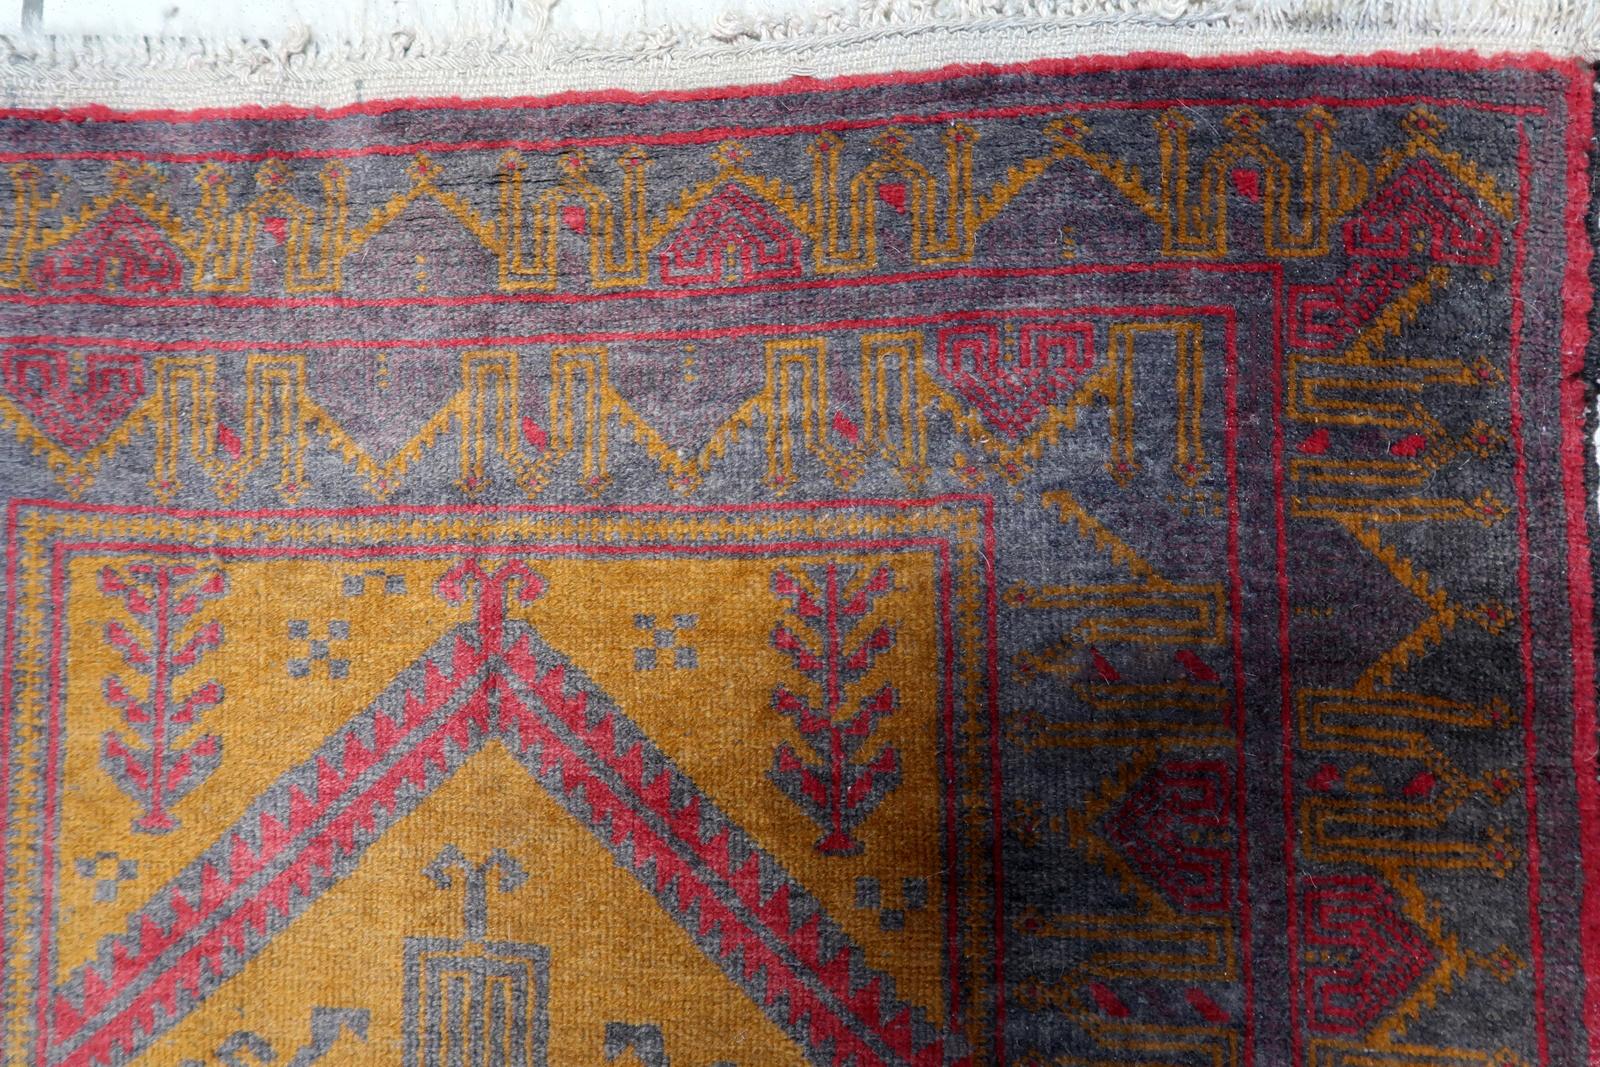 Voici notre captivant tapis vintage afghan Baluch, fait à la main, datant des années 1950. Ce tapis exquis présente un style traditionnel baloutche avec un mélange unique de couleurs de fond fuchsia, orange et violet grisâtre, ajoutant de l'éclat et